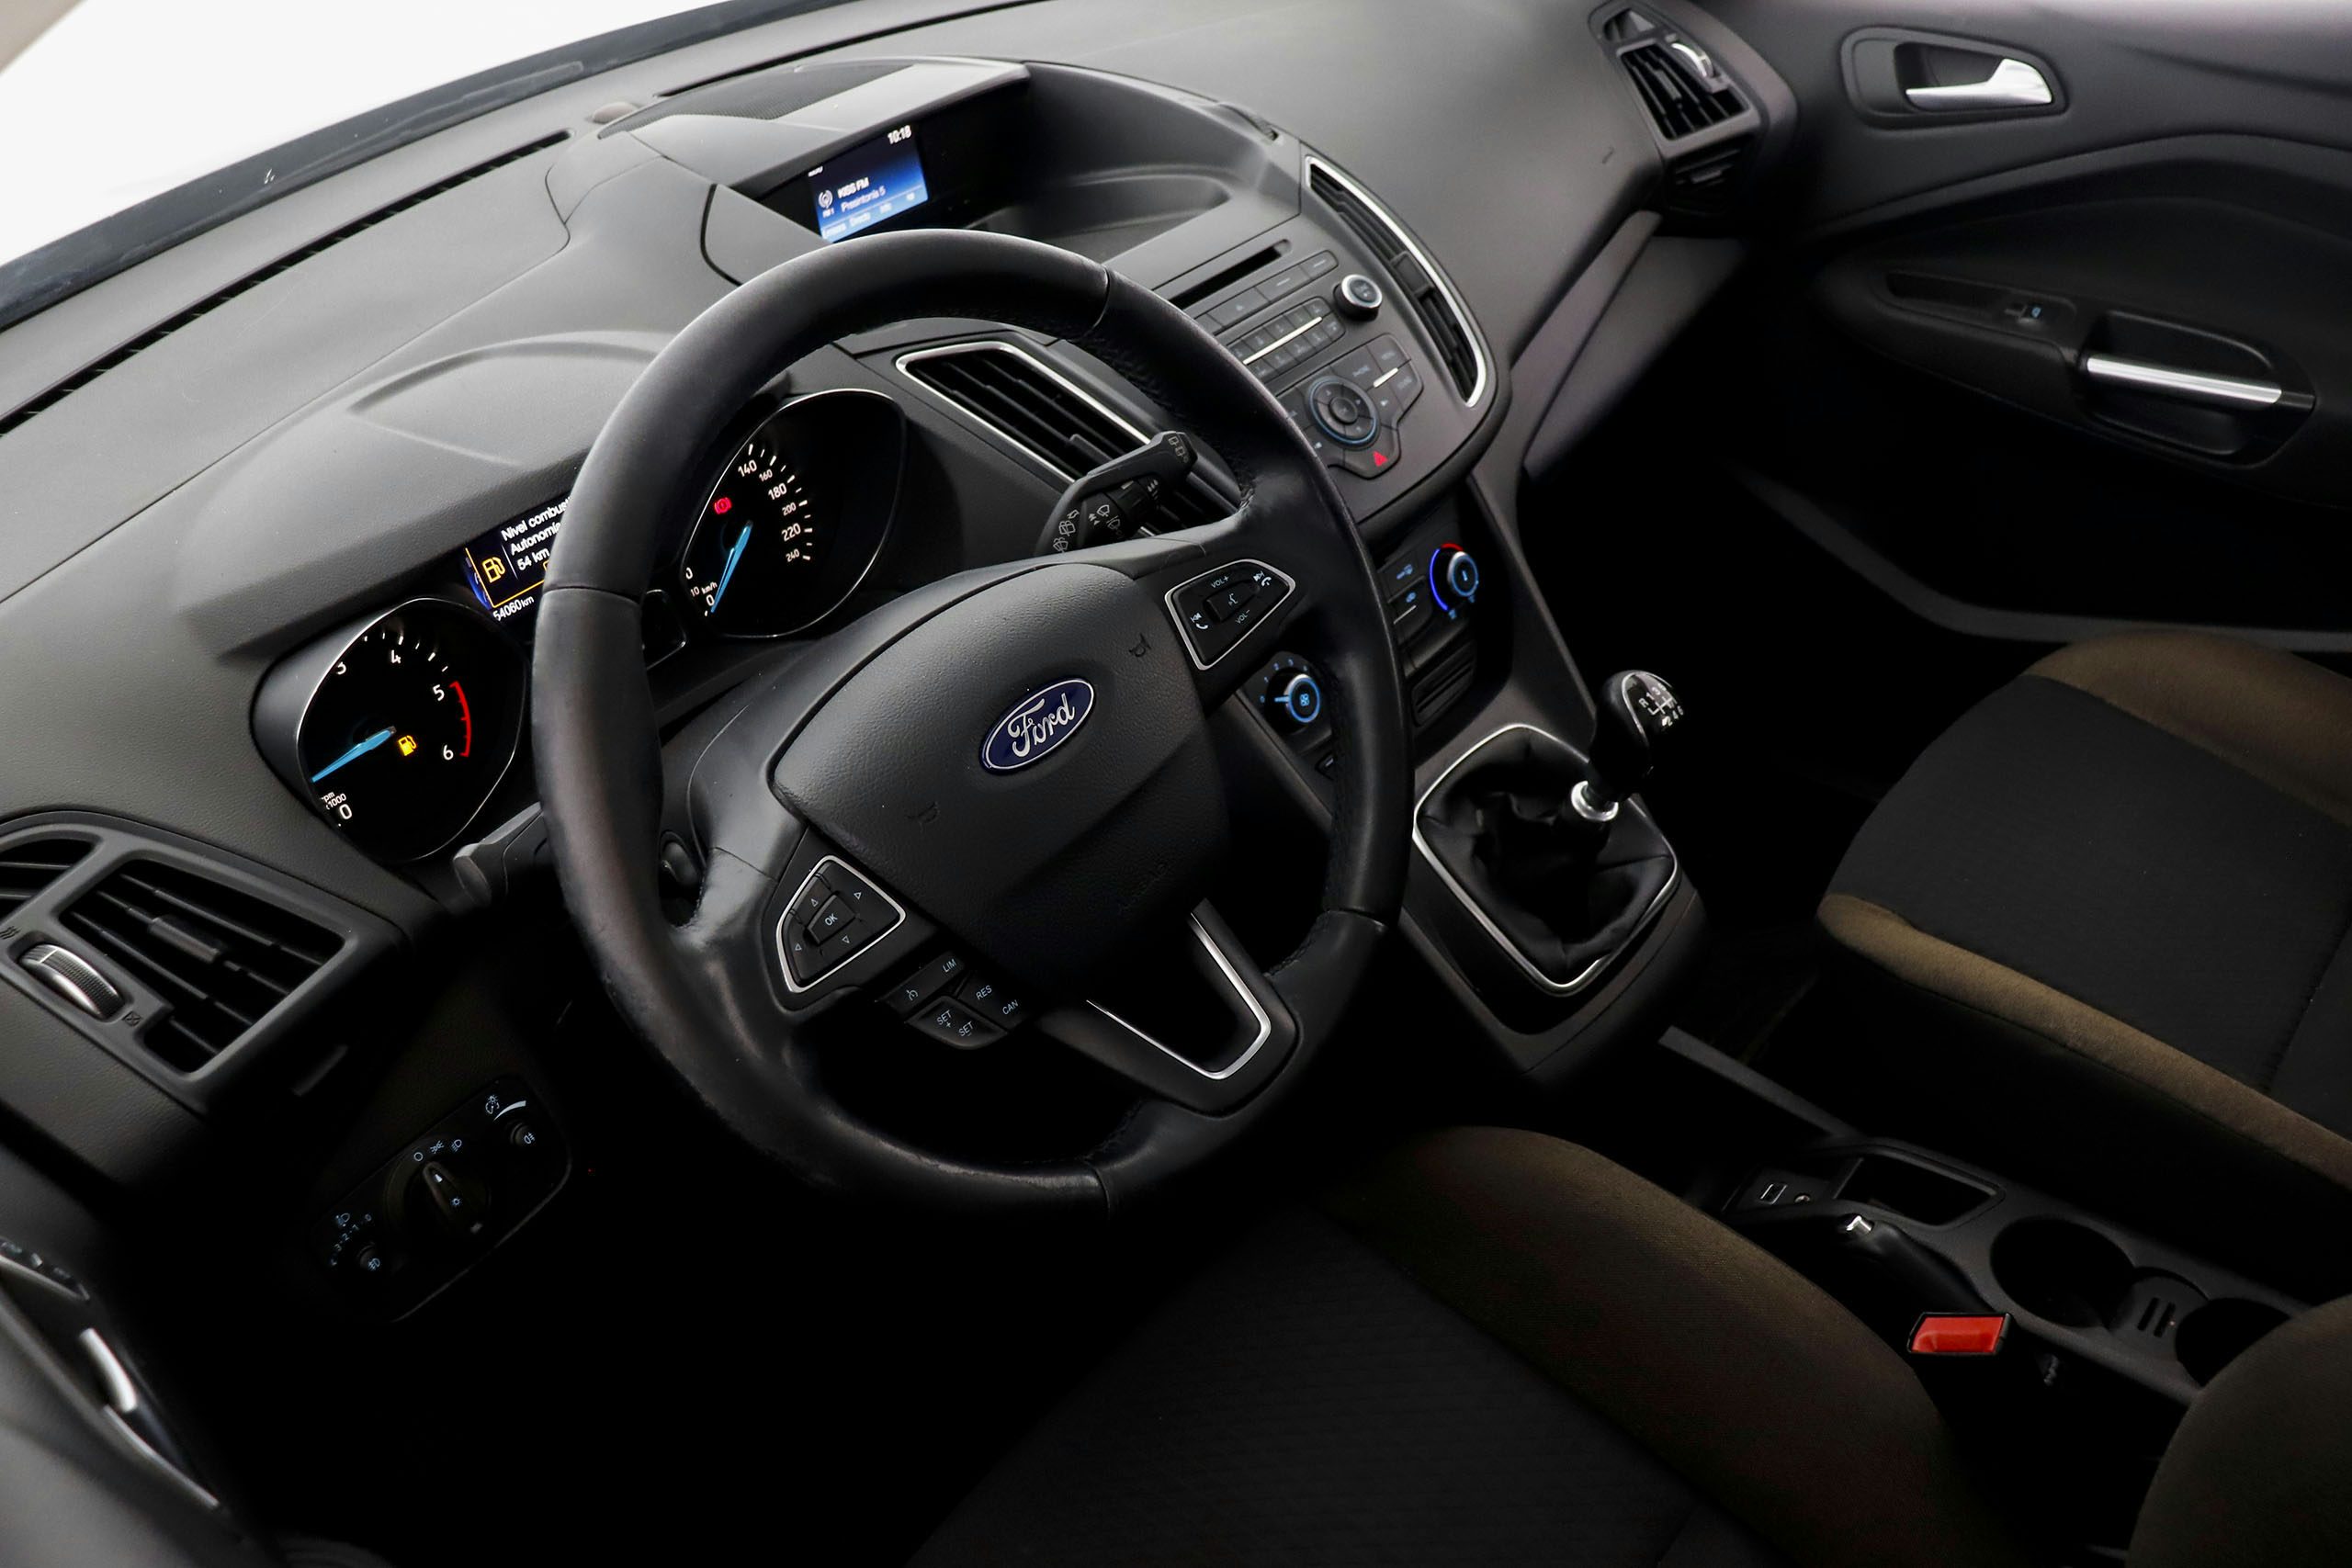 Ford C-max 1.5 TDCI Flexifuel 120cv Trend  5p - Foto 17